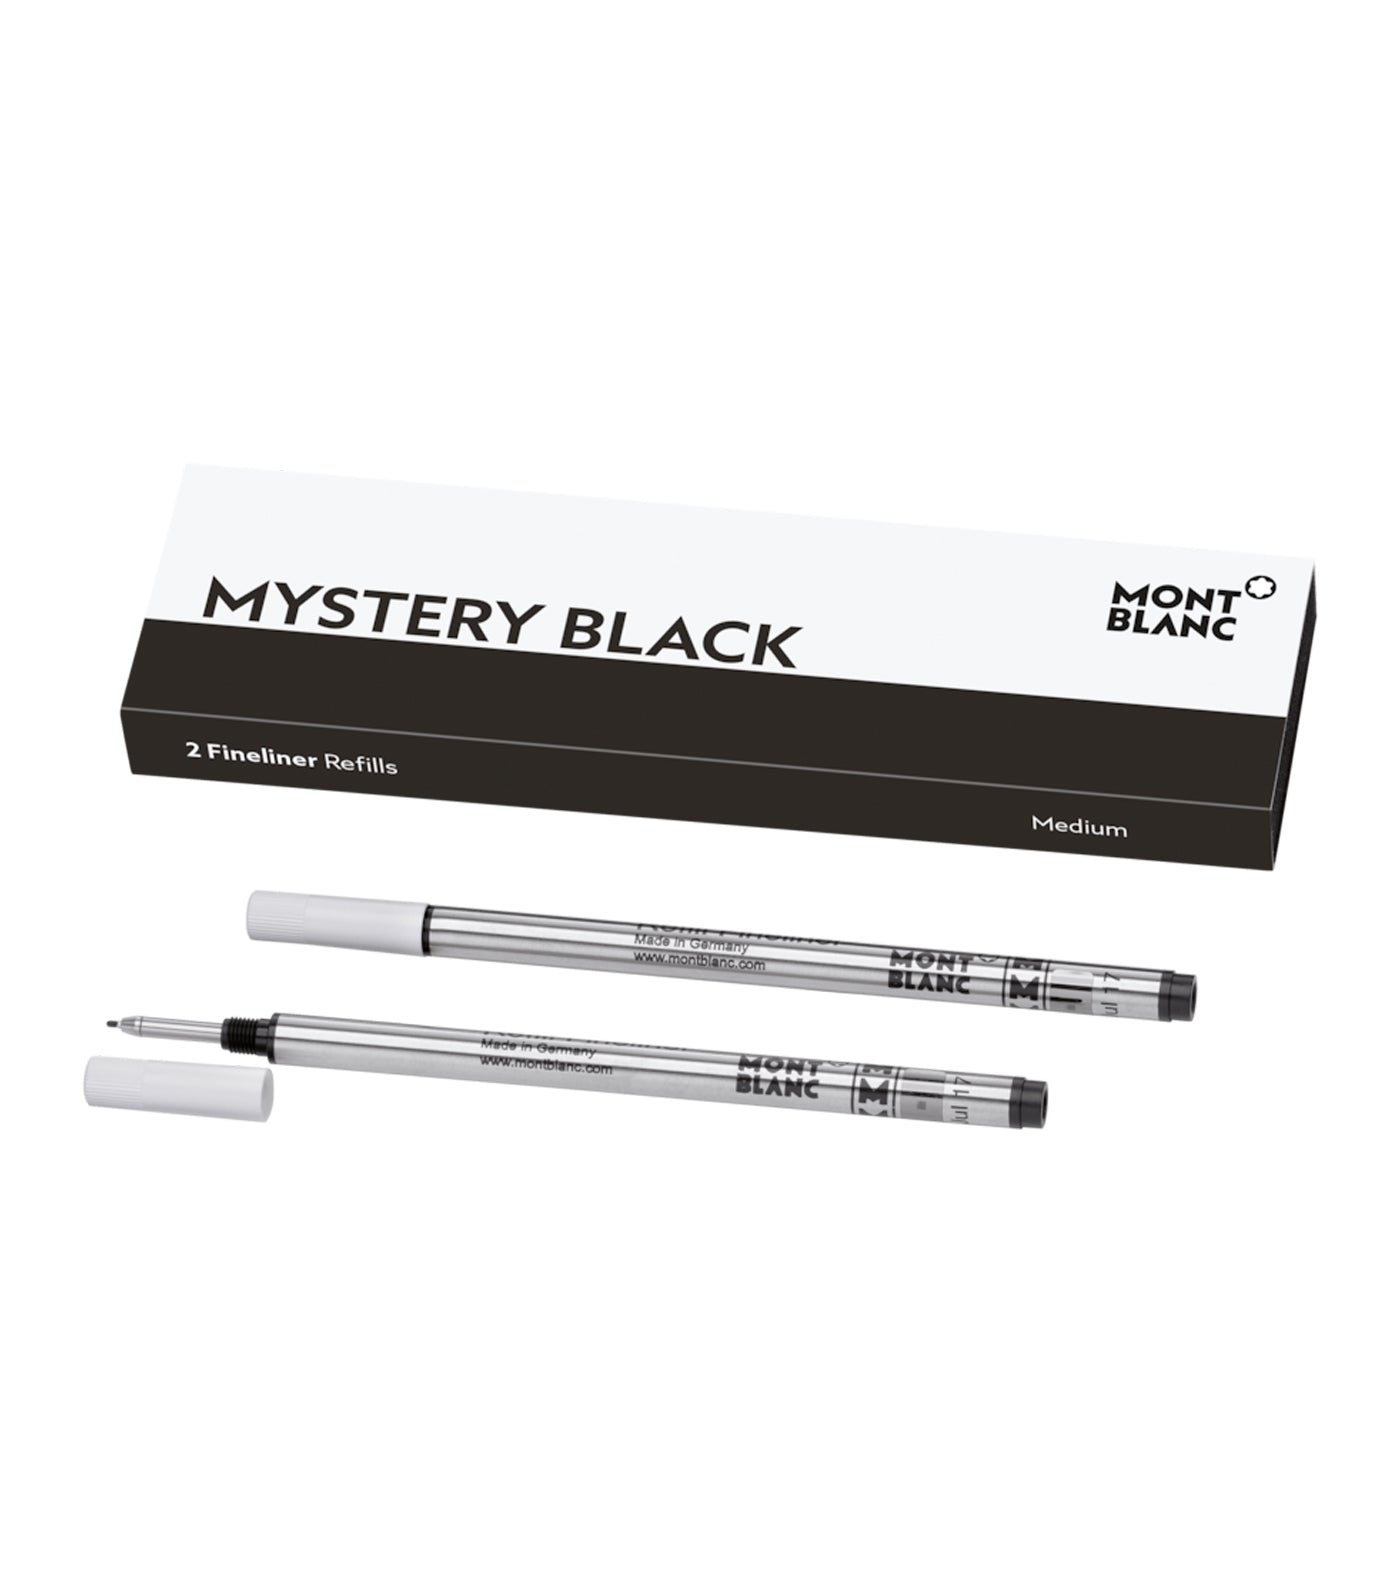 2 Fineliner Refills Medium Mystery Black